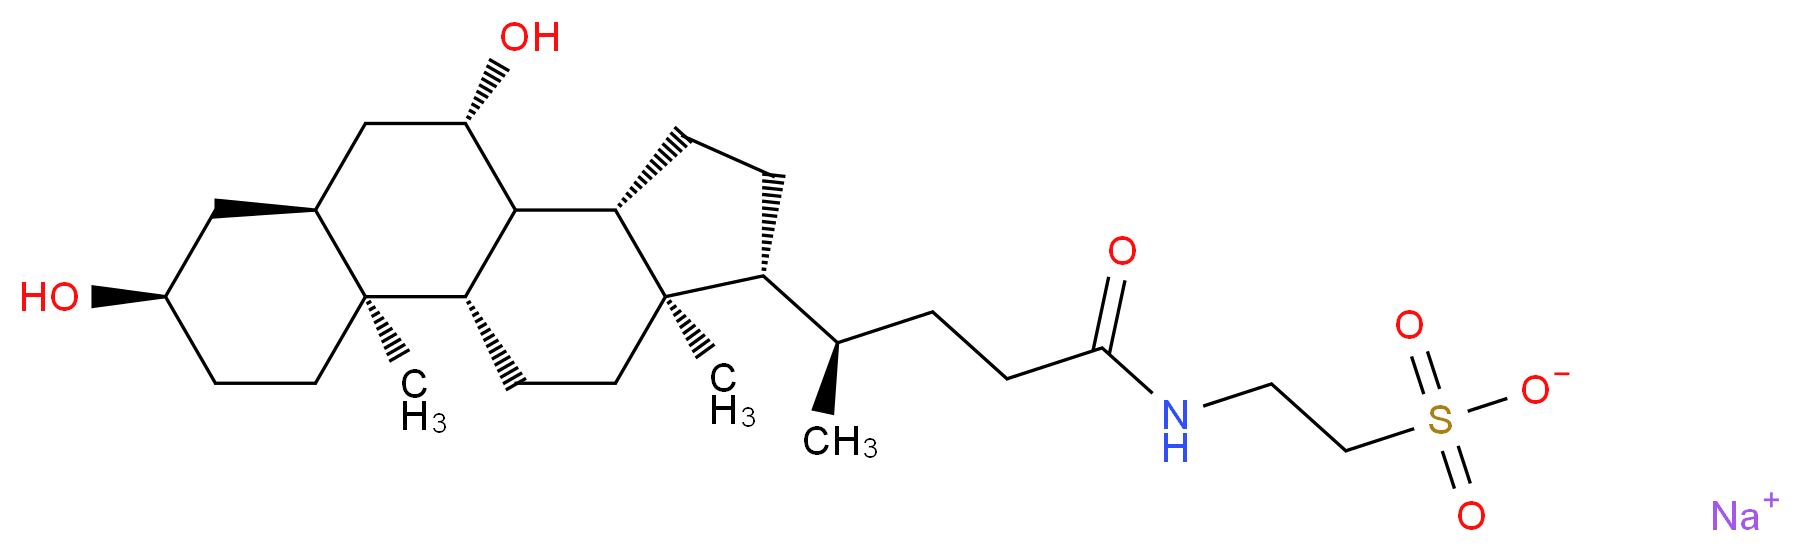 35807-85-3 molecular structure